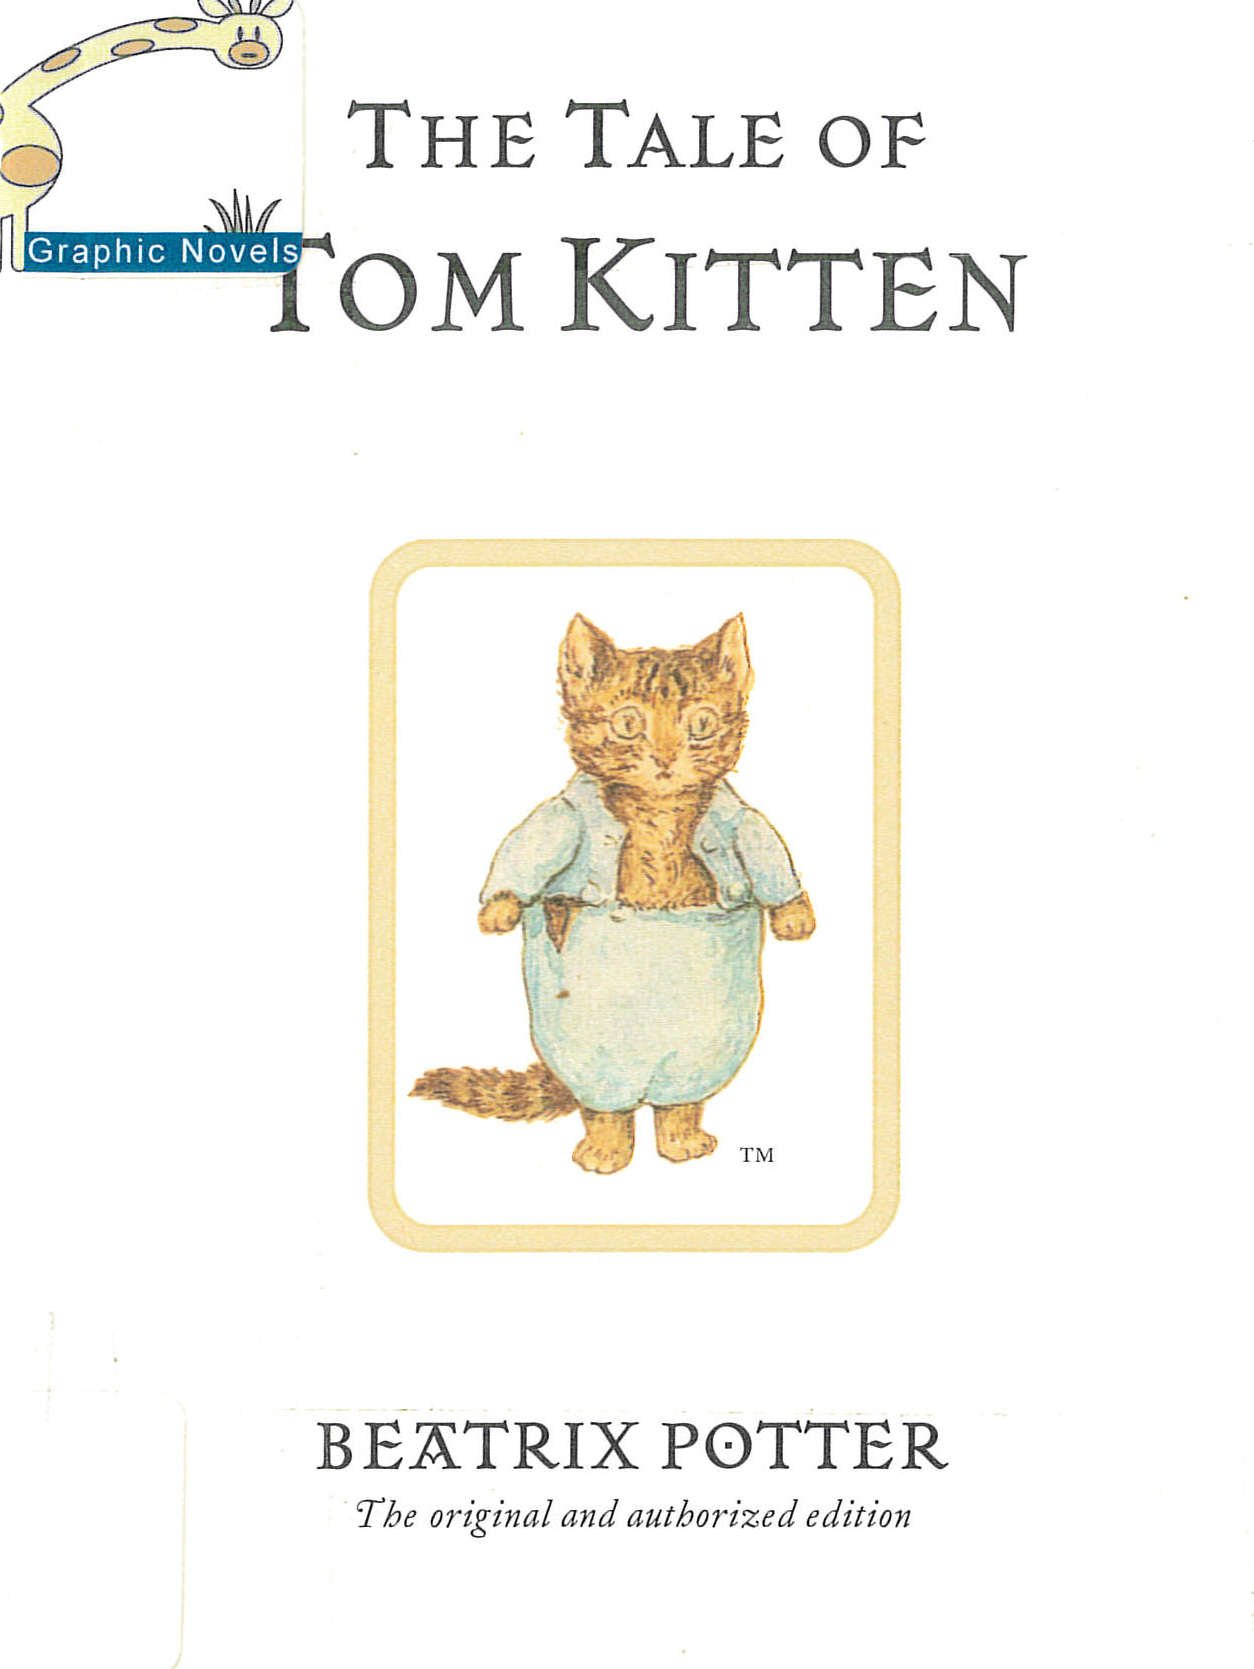 The tale of Tom Kitten